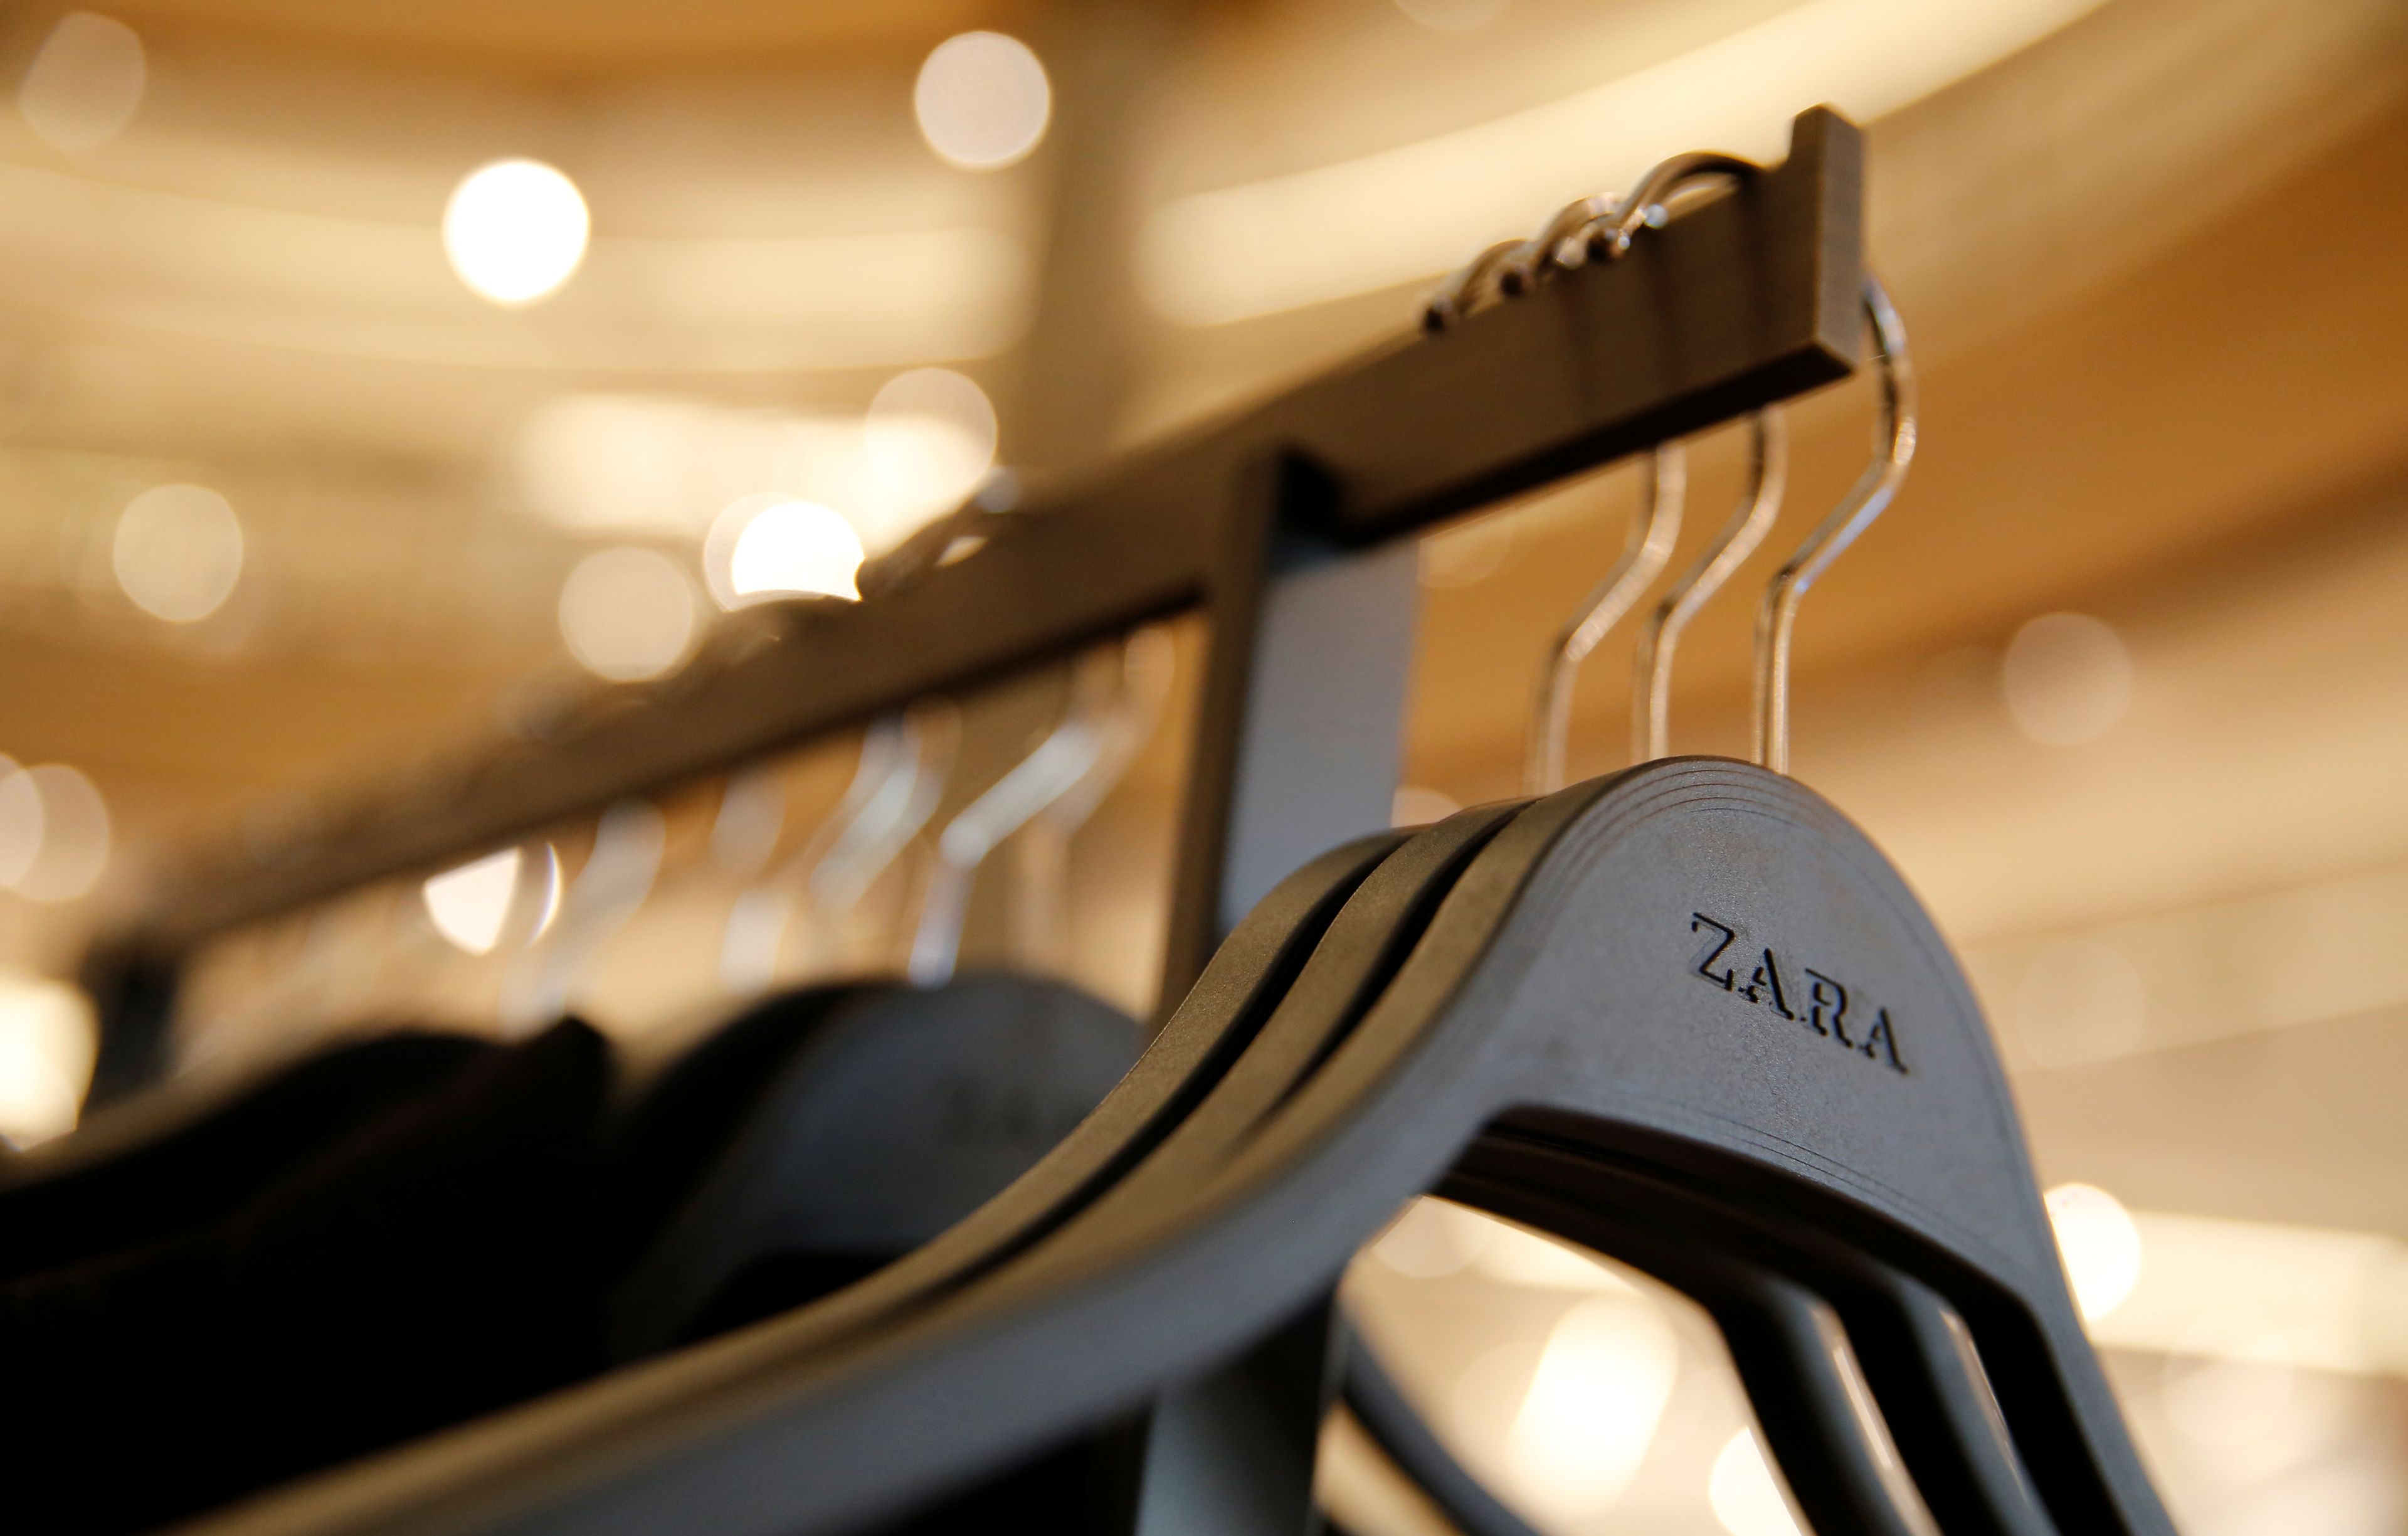 Un perchero de una tienda de Zara en Barcelona